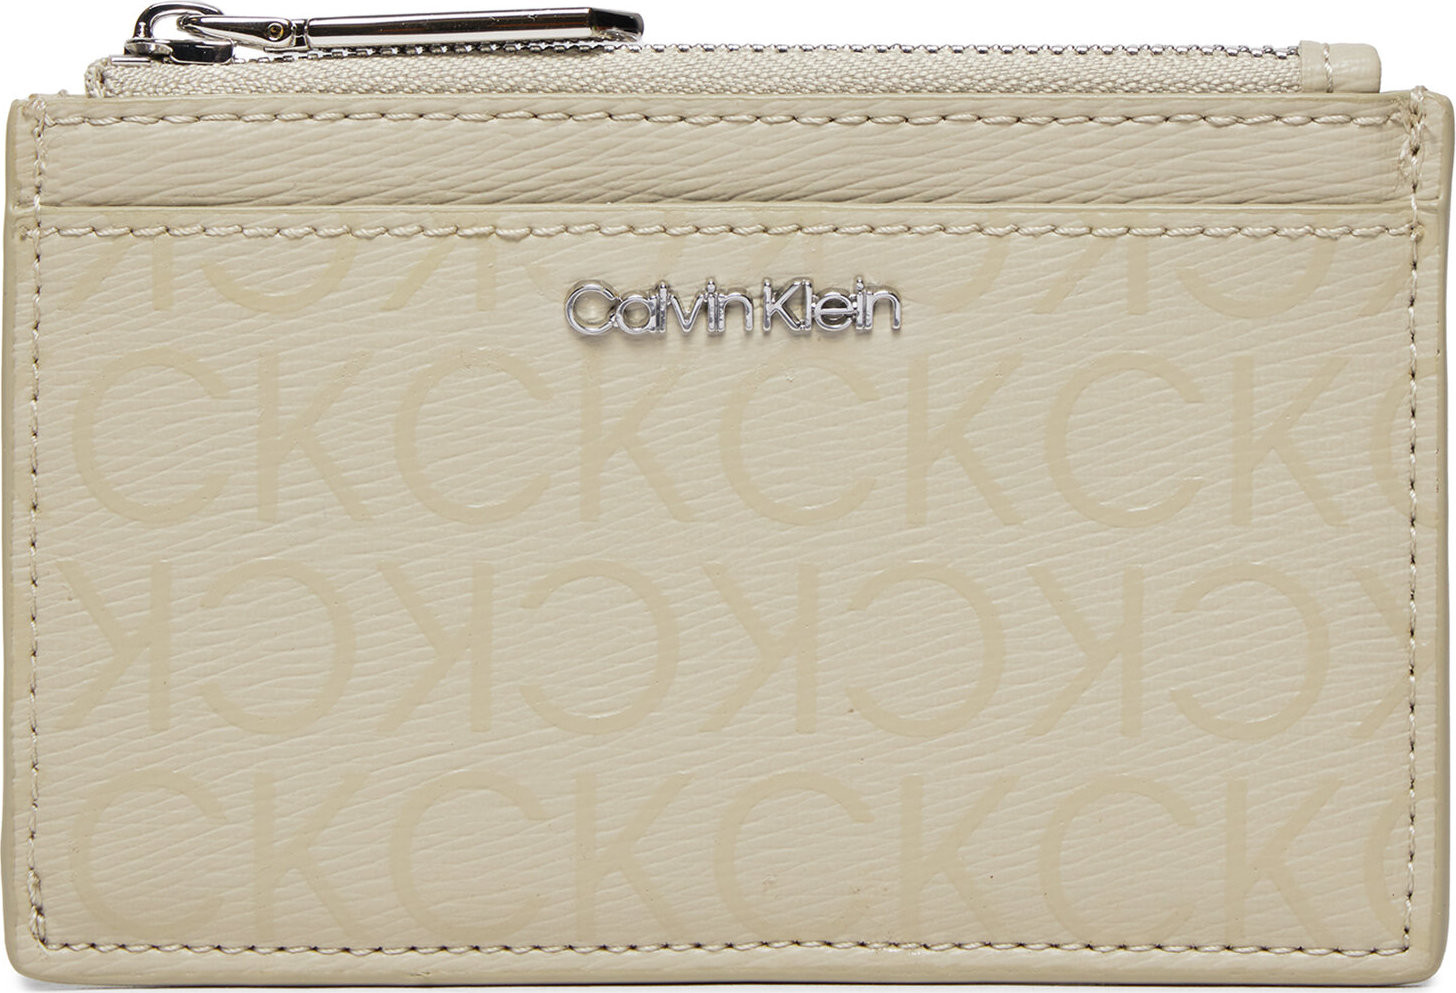 Malá dámská peněženka Calvin Klein Ck Must Lg Cardholder_Epi Mono K60K611935 Stoney Beige Epi Mono PEA